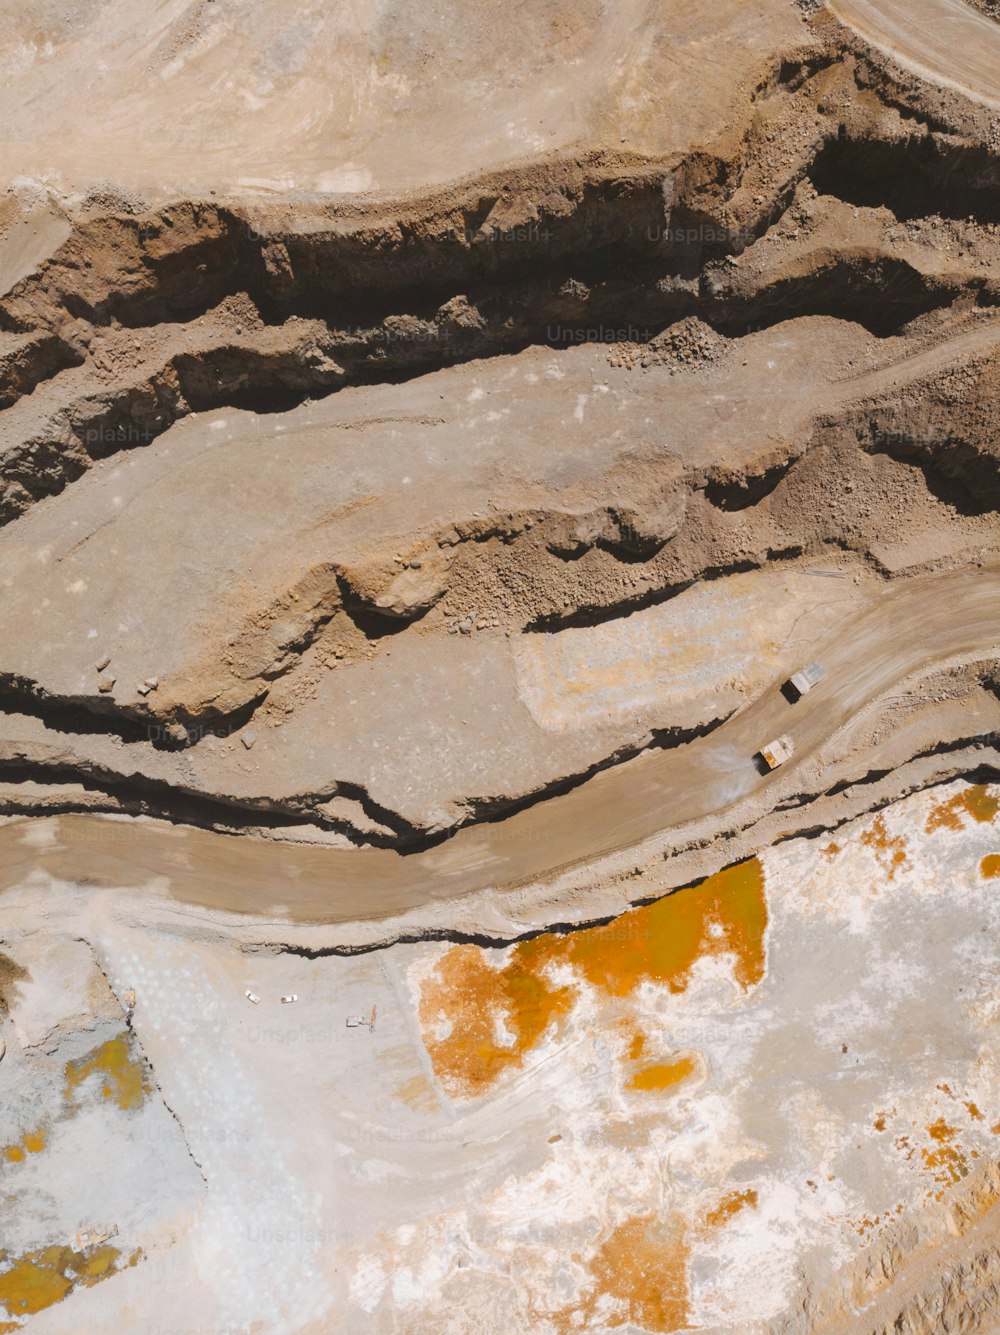 a bird's eye view of a desert landscape